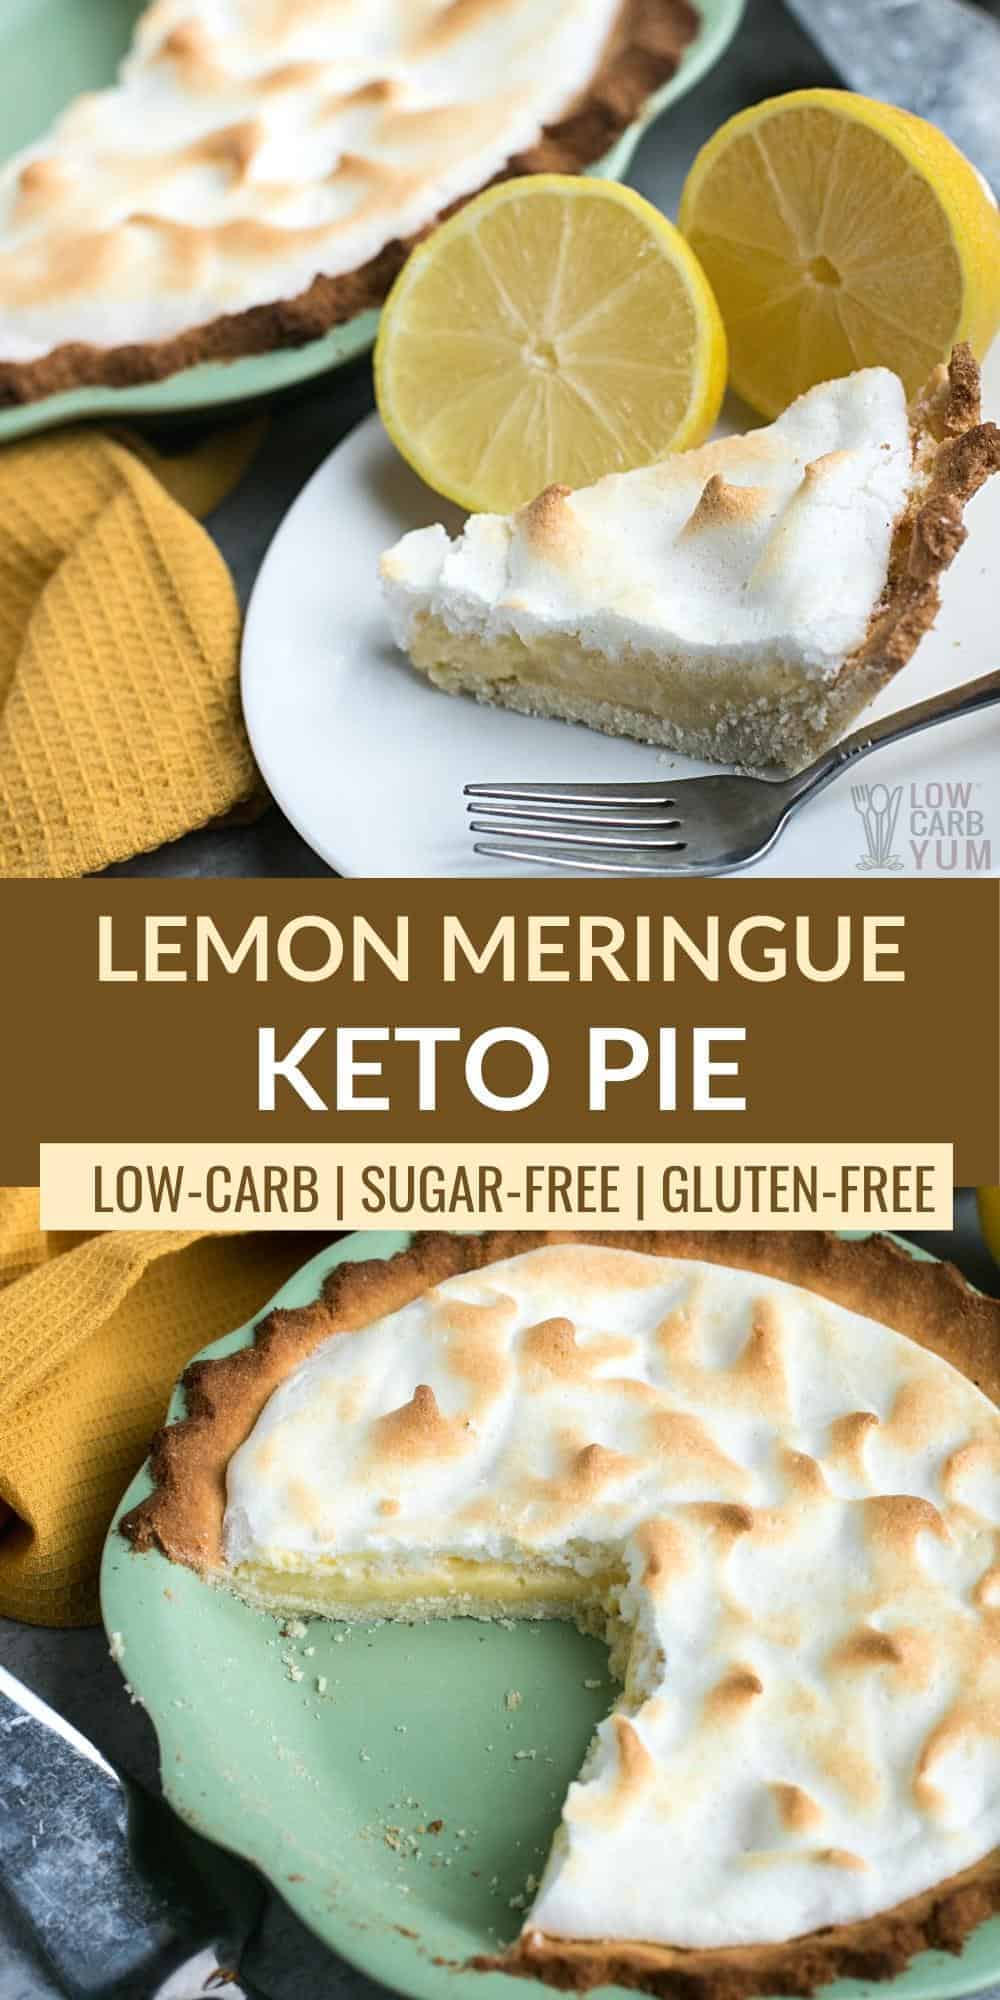 keto lemon meringue pie pinterest image.